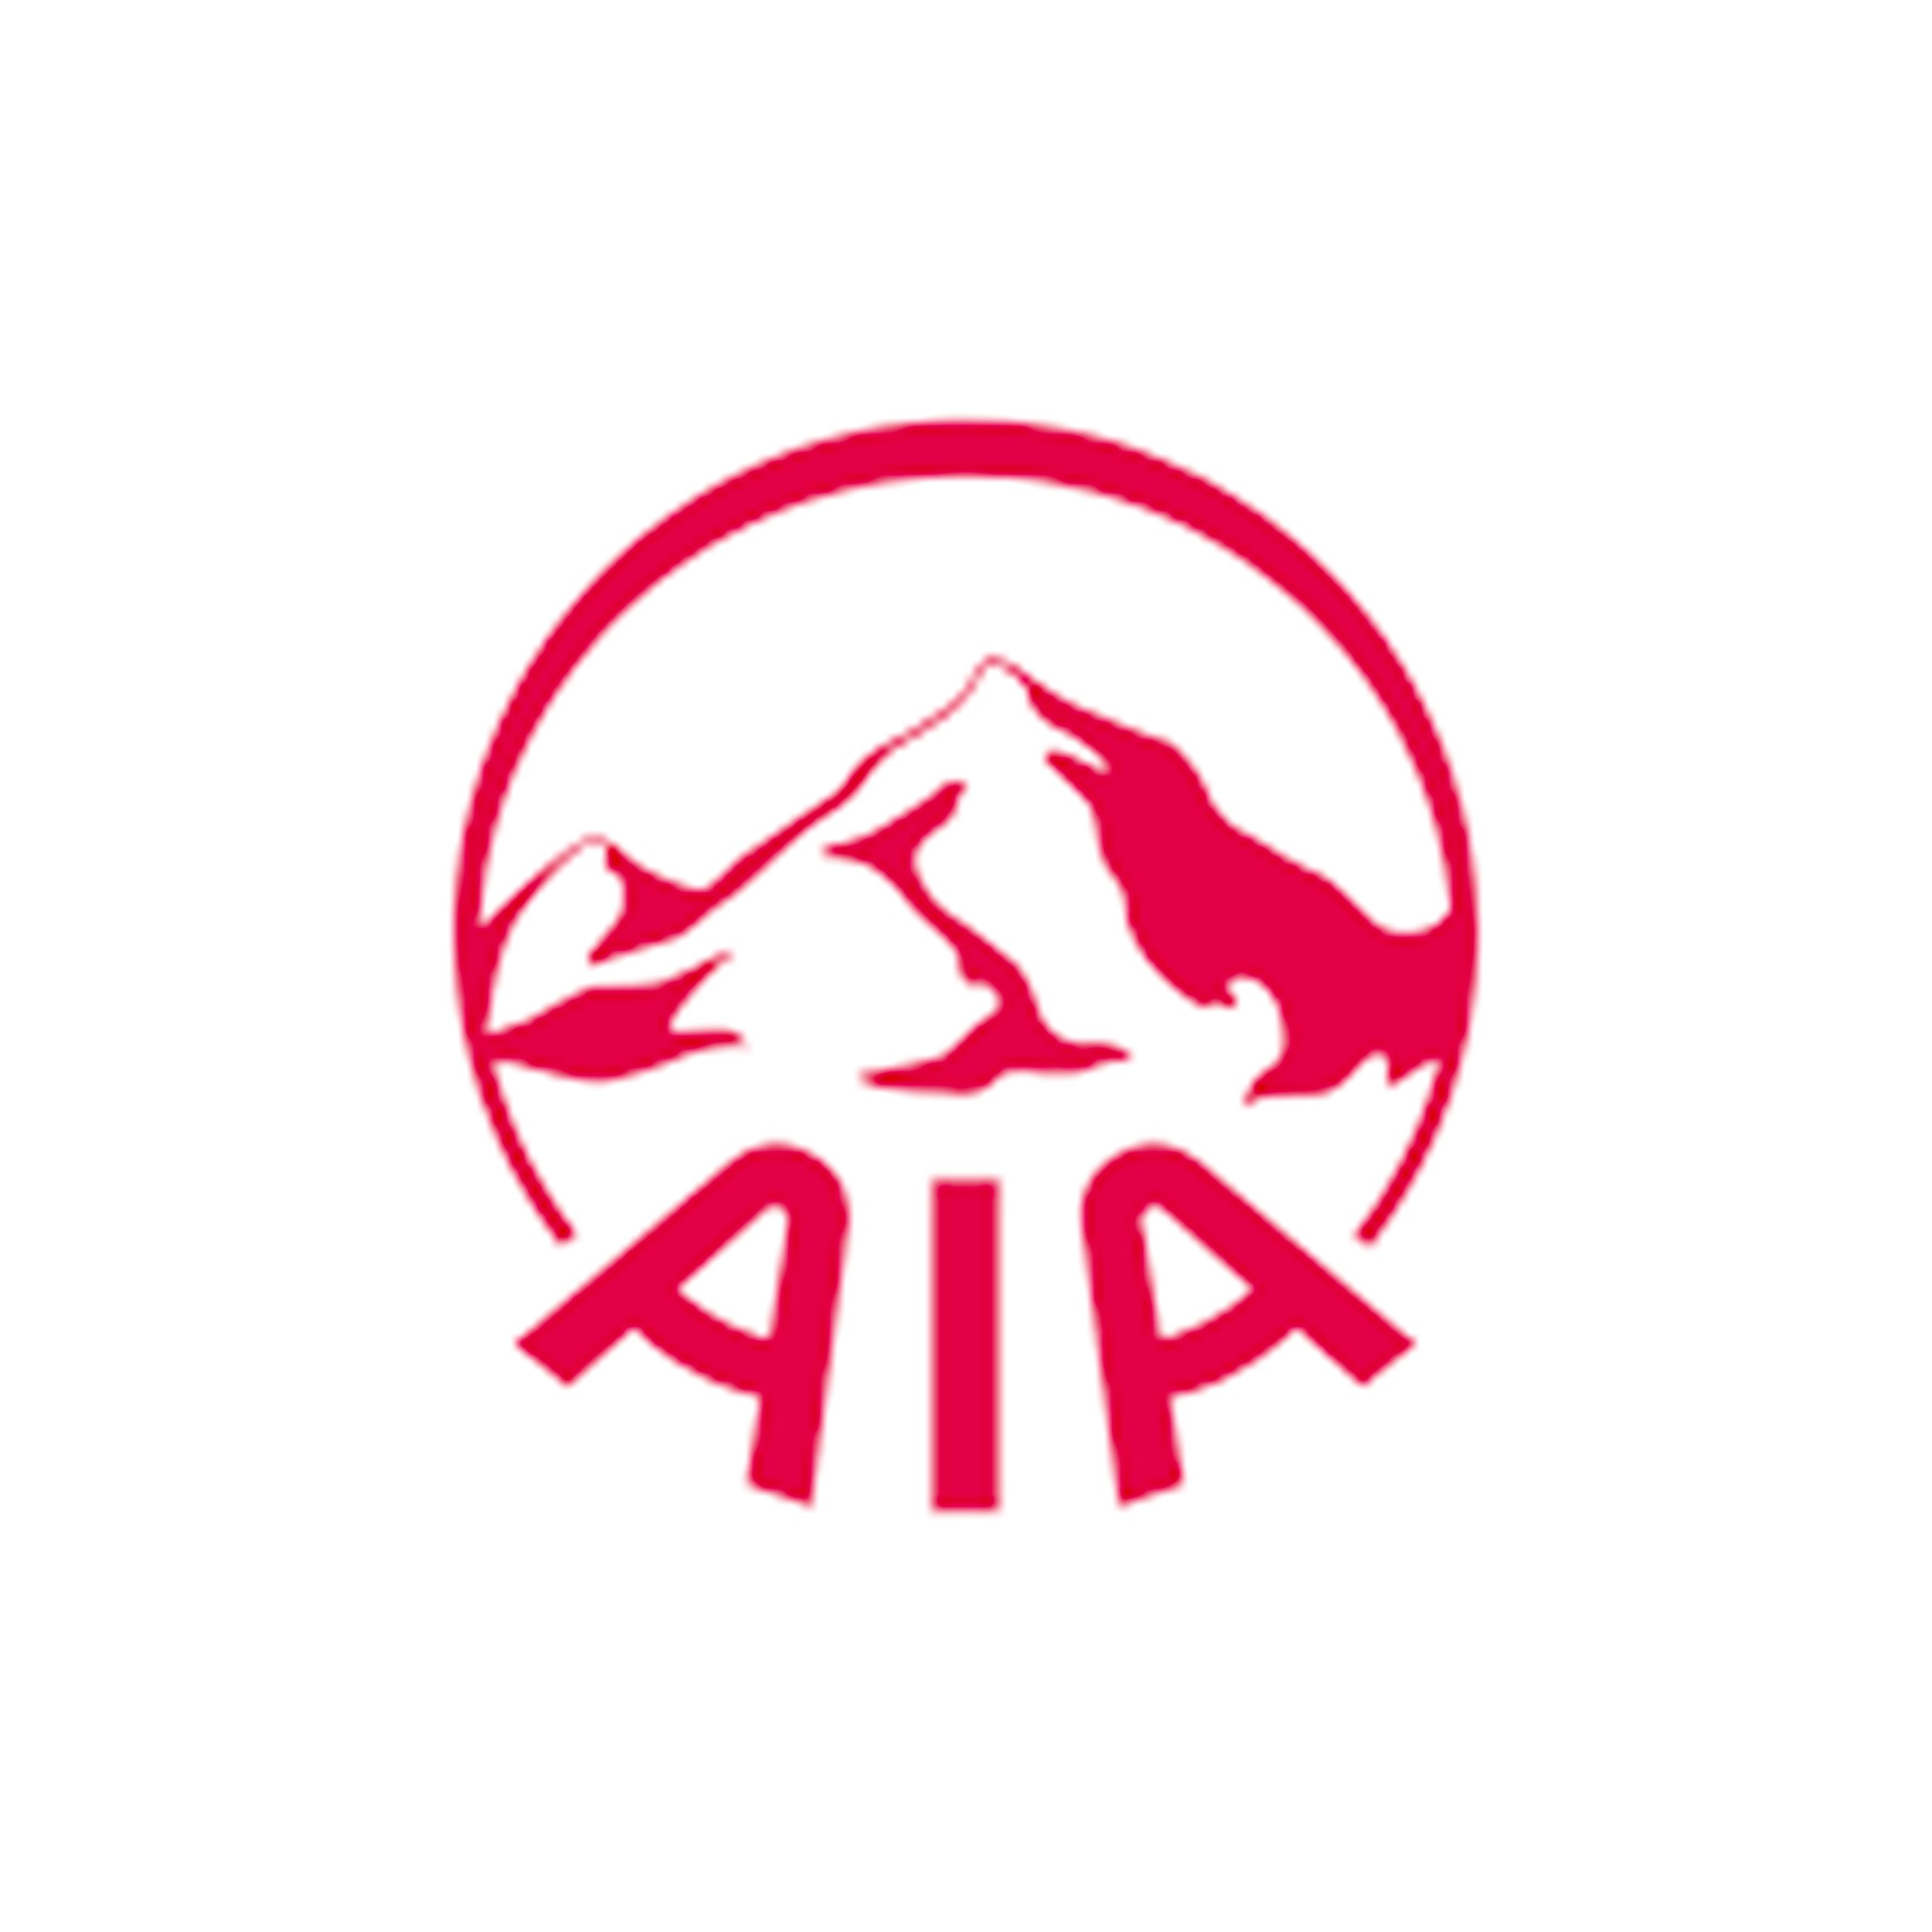 AIA logo.jpg